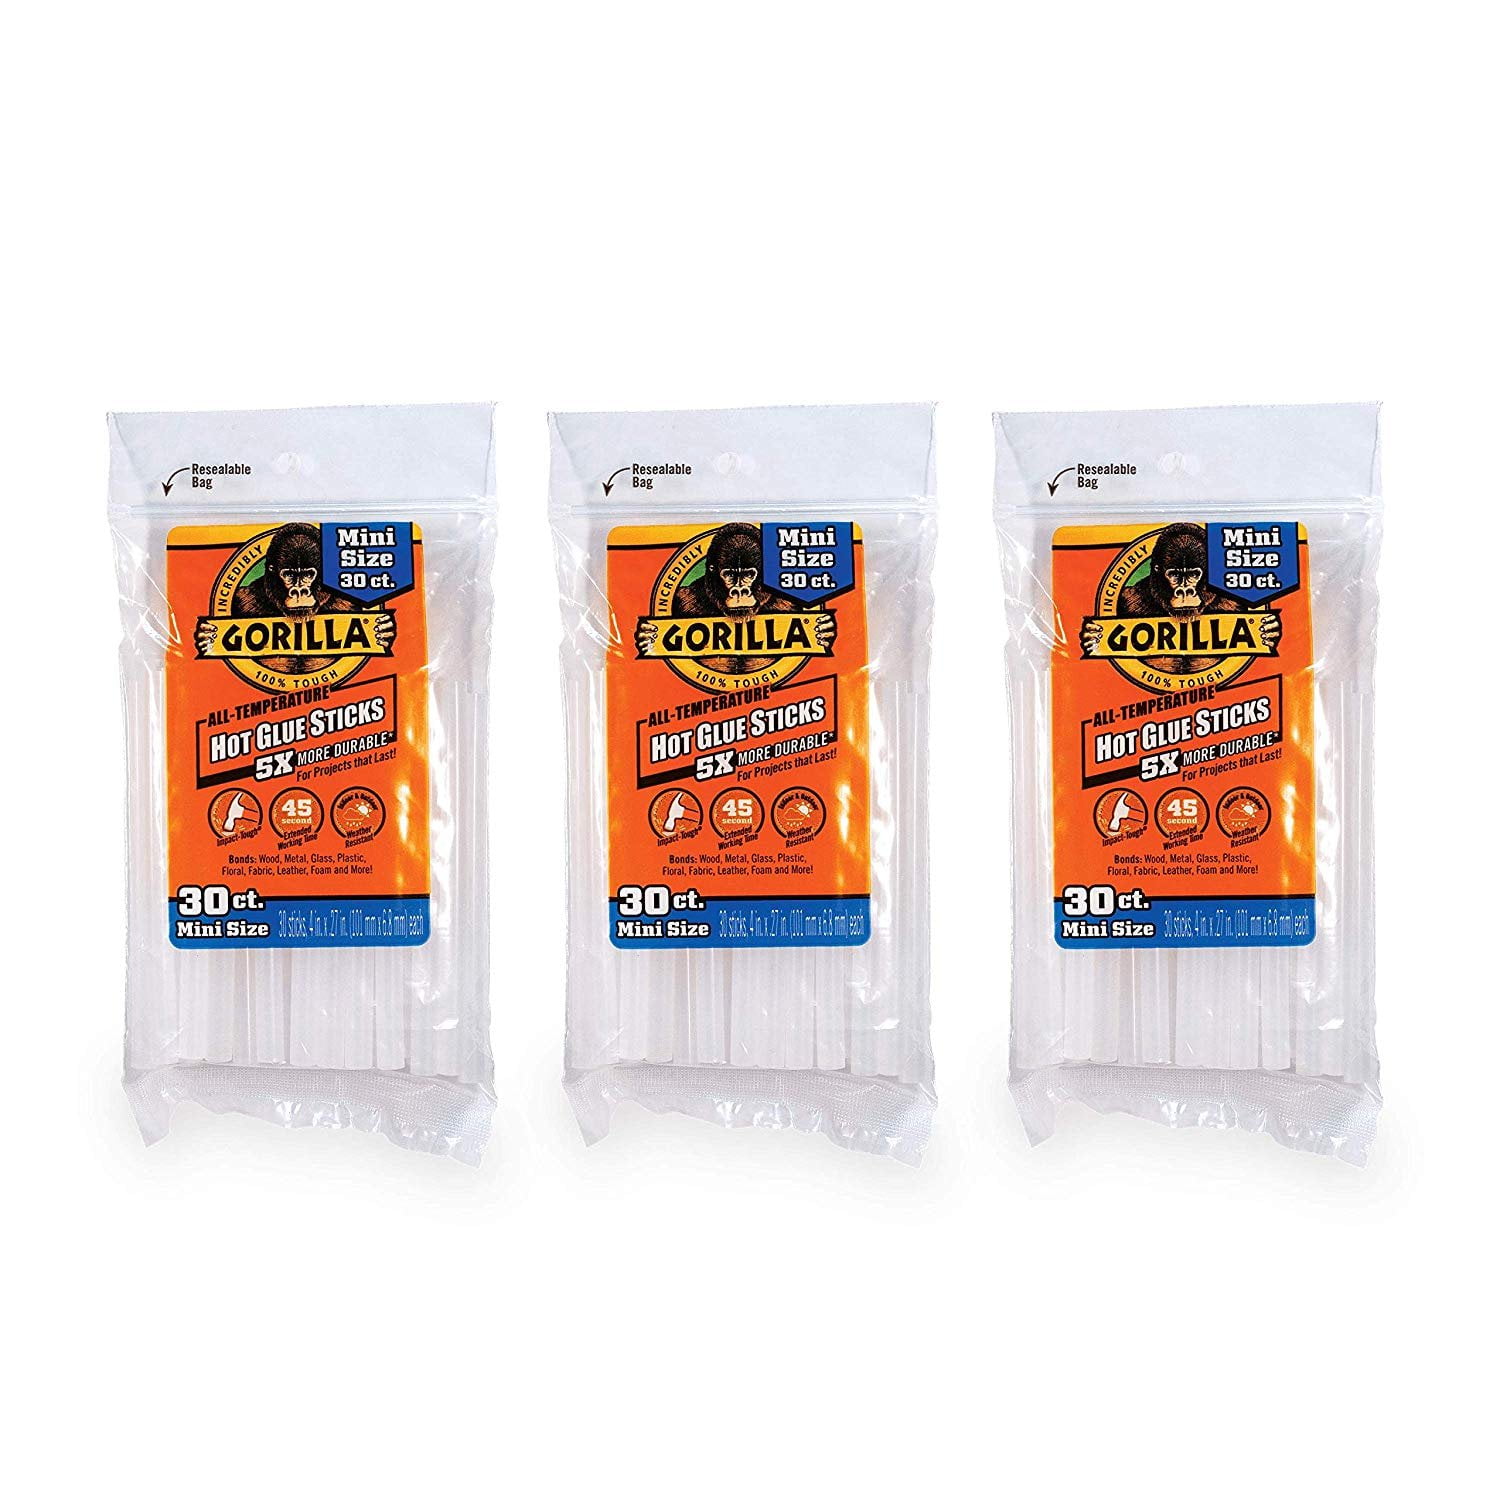 Uxcell 0.27 x 4 Black Mini Hot Glue Sticks for Glue Gun 6 Pack